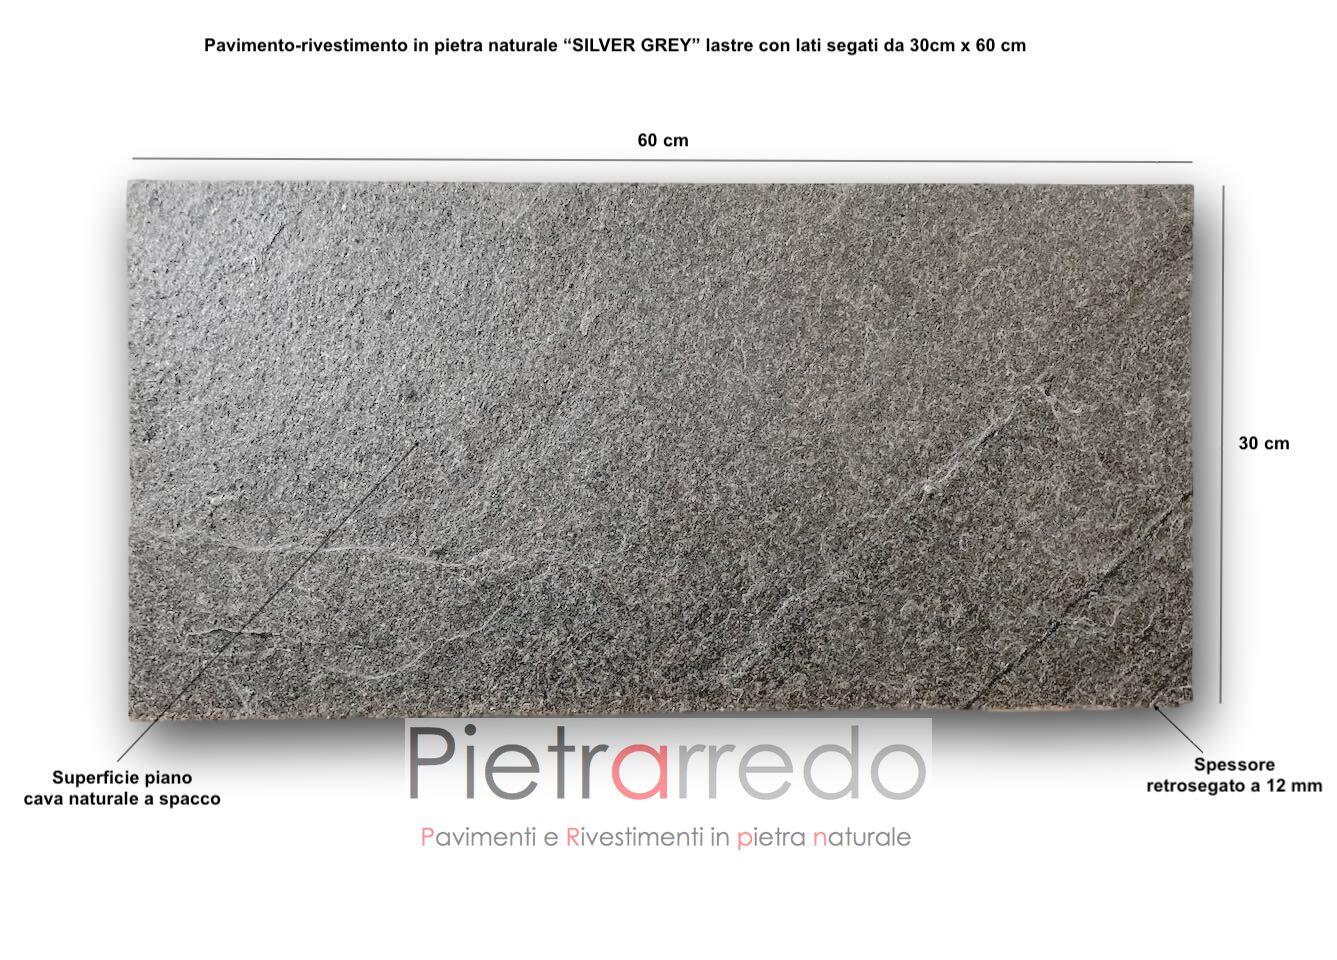 piastrelle lastre in pietra basso spessore silver grey piano cava naturale offerta prezzo 12 mm pietrarredo milano prezzo